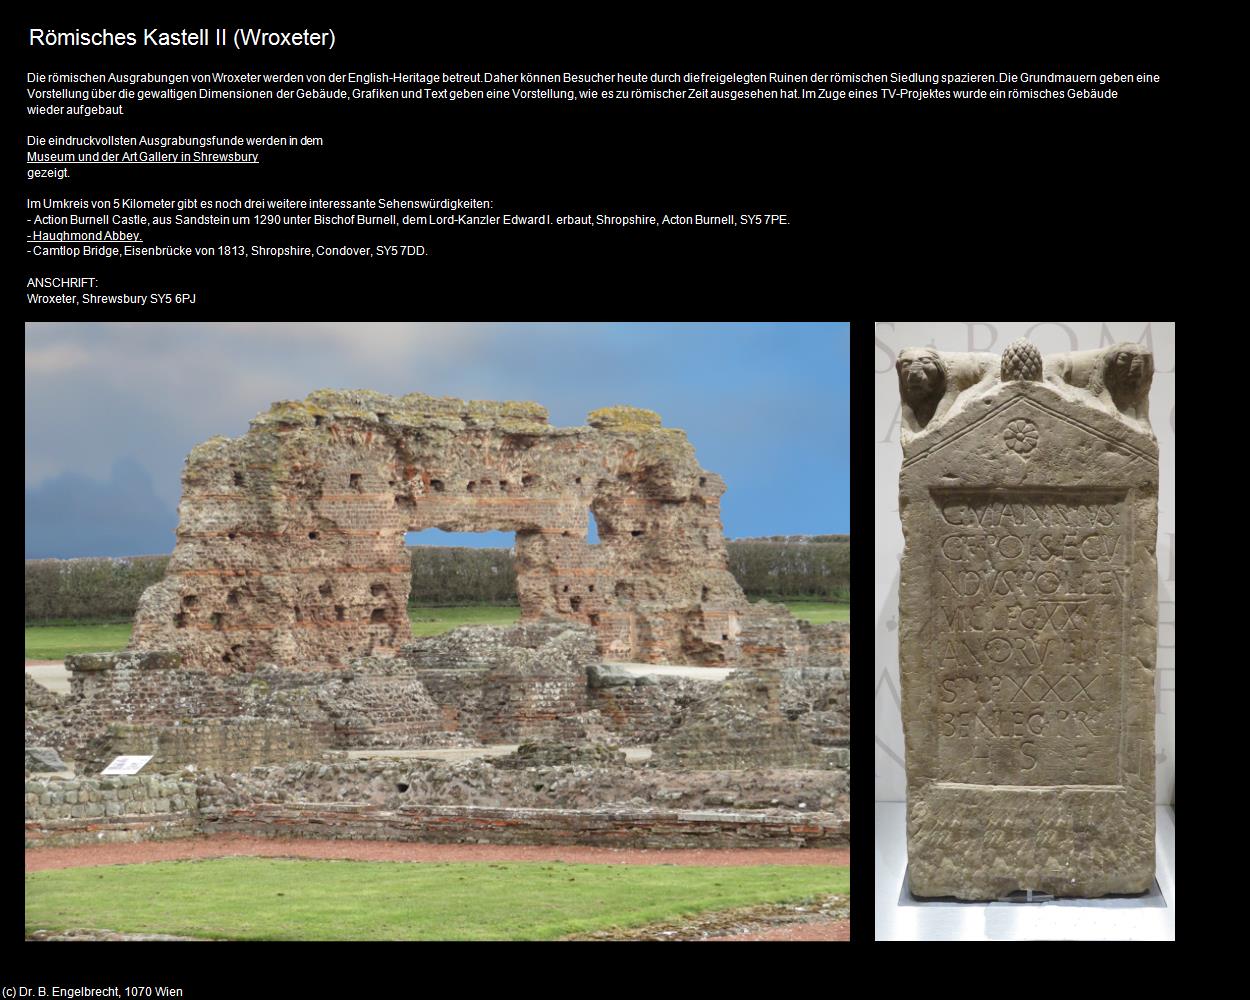 Römisches Kastell II  (Wroxeter, England) in Kulturatlas-ENGLAND und WALES(c)B.Engelbrecht